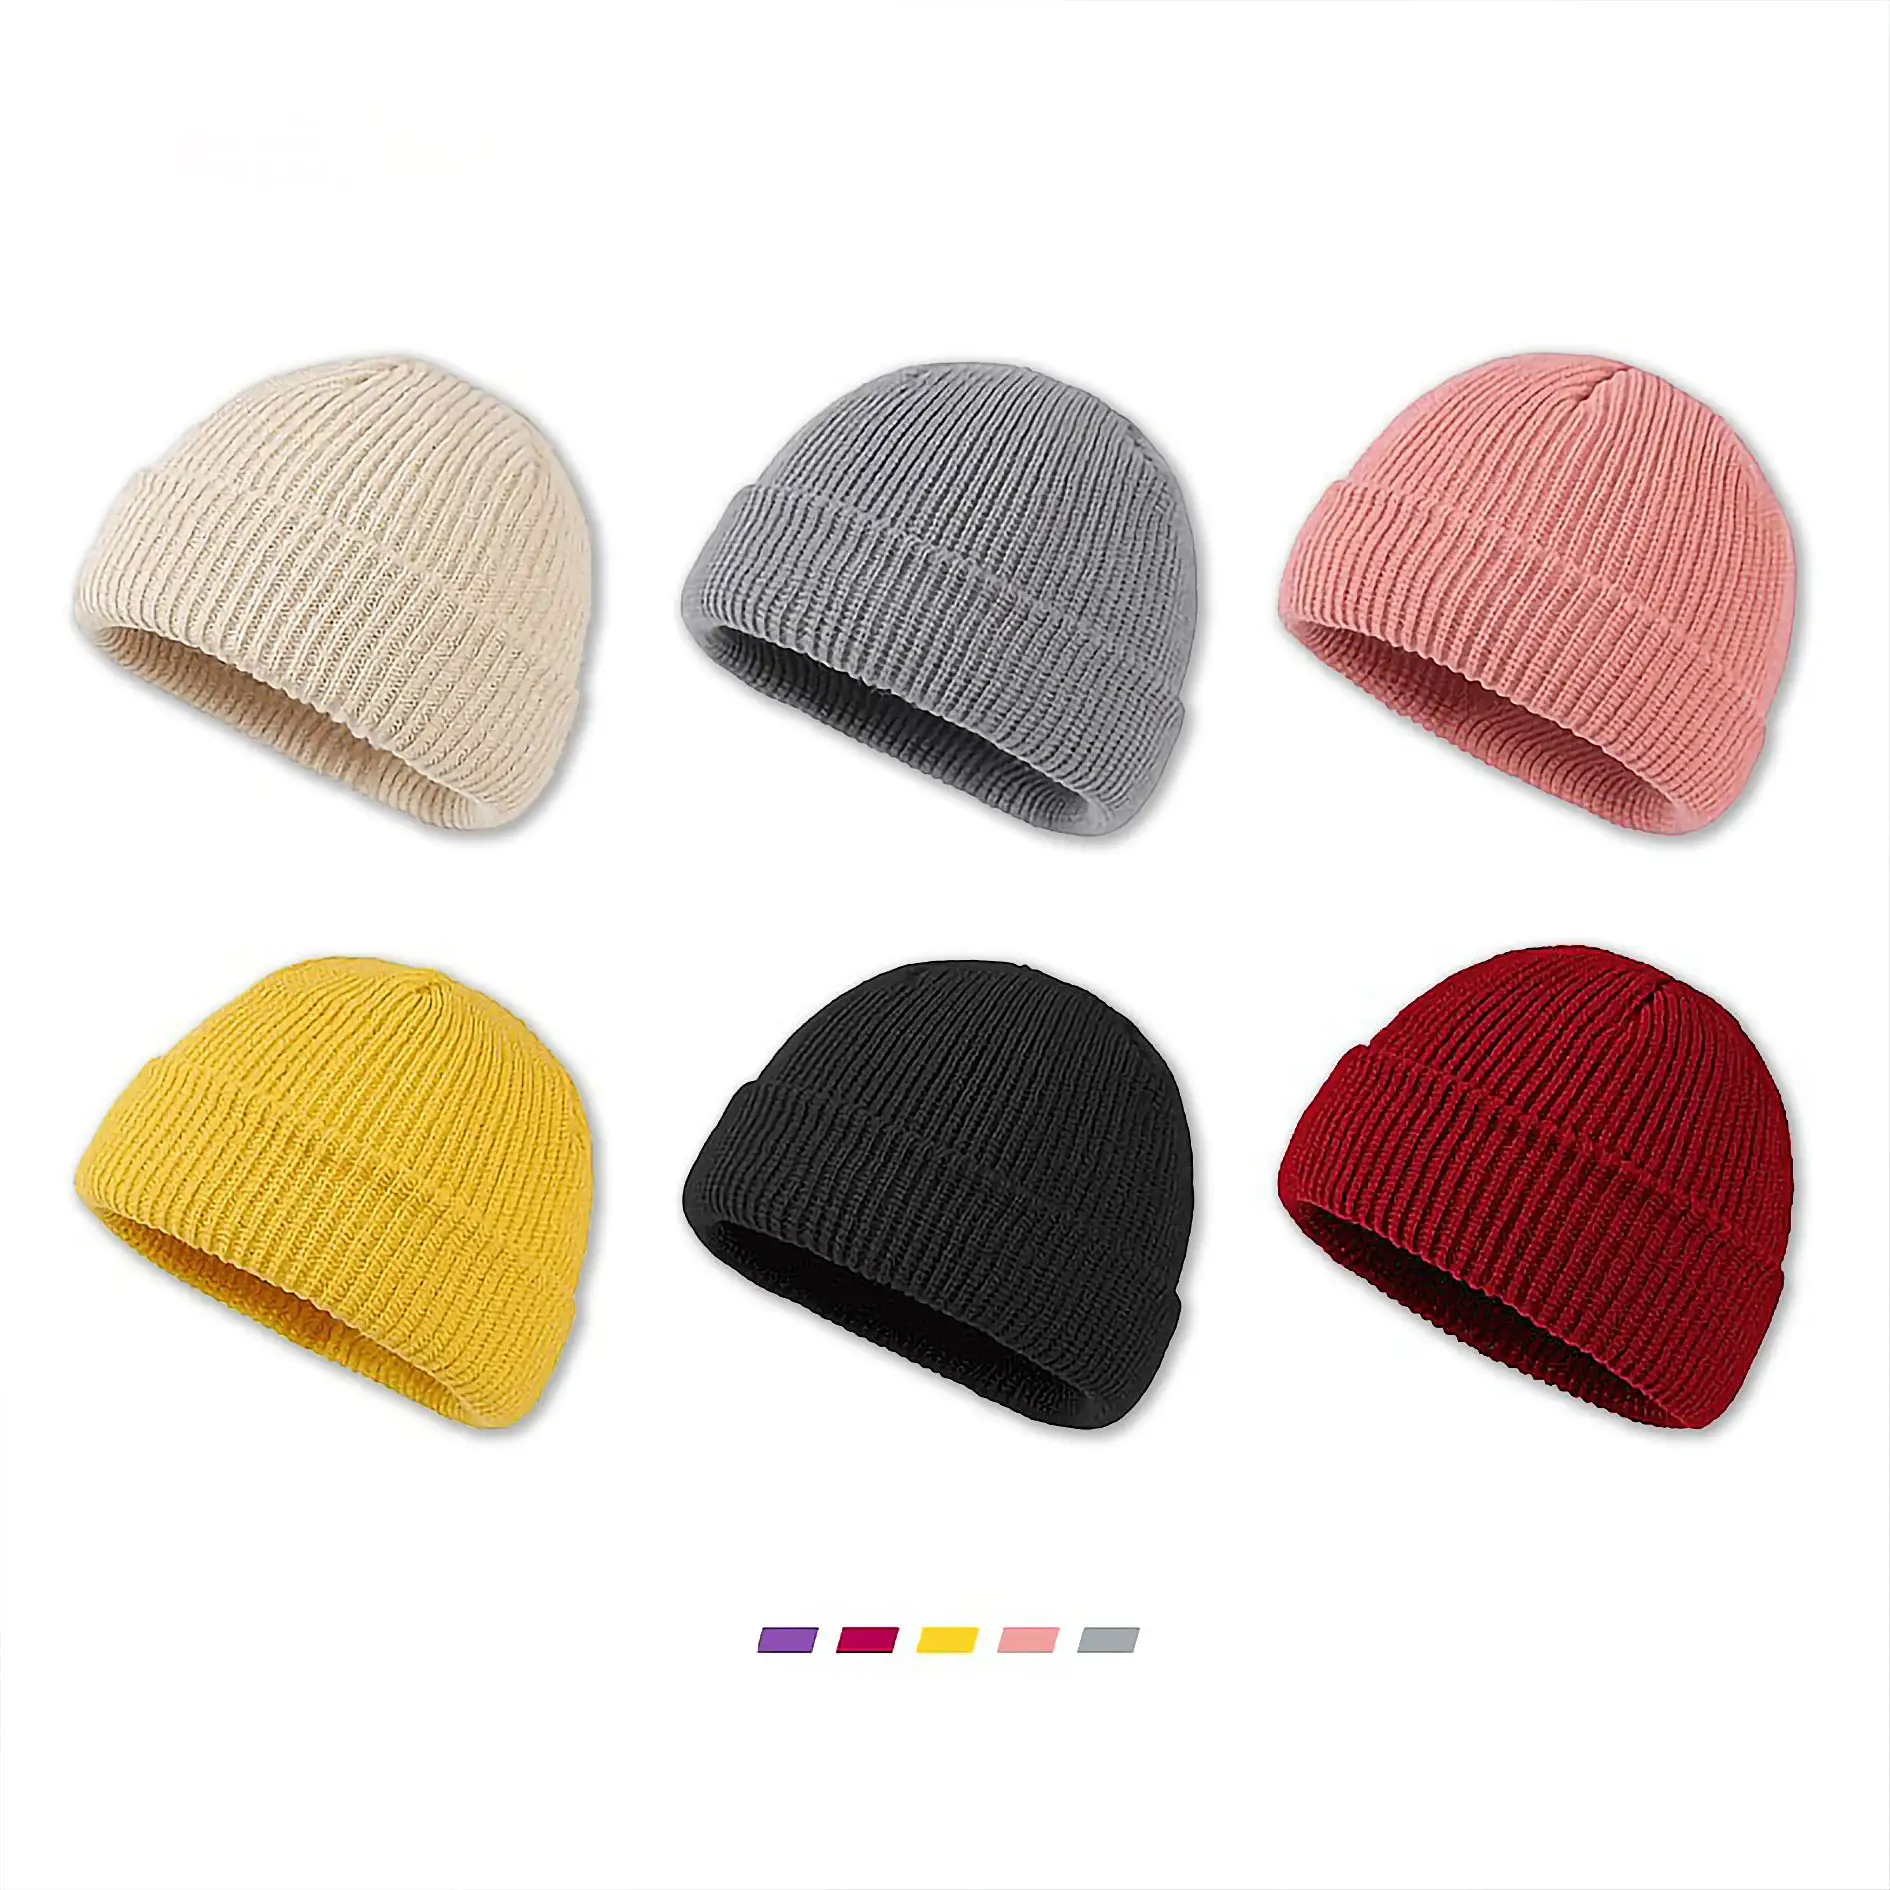 가을/겨울 새로운 한국어 버전 캔디 컬러 울 니트 모자 따뜻한 연인 모자 학생 멜론 스킨 모자